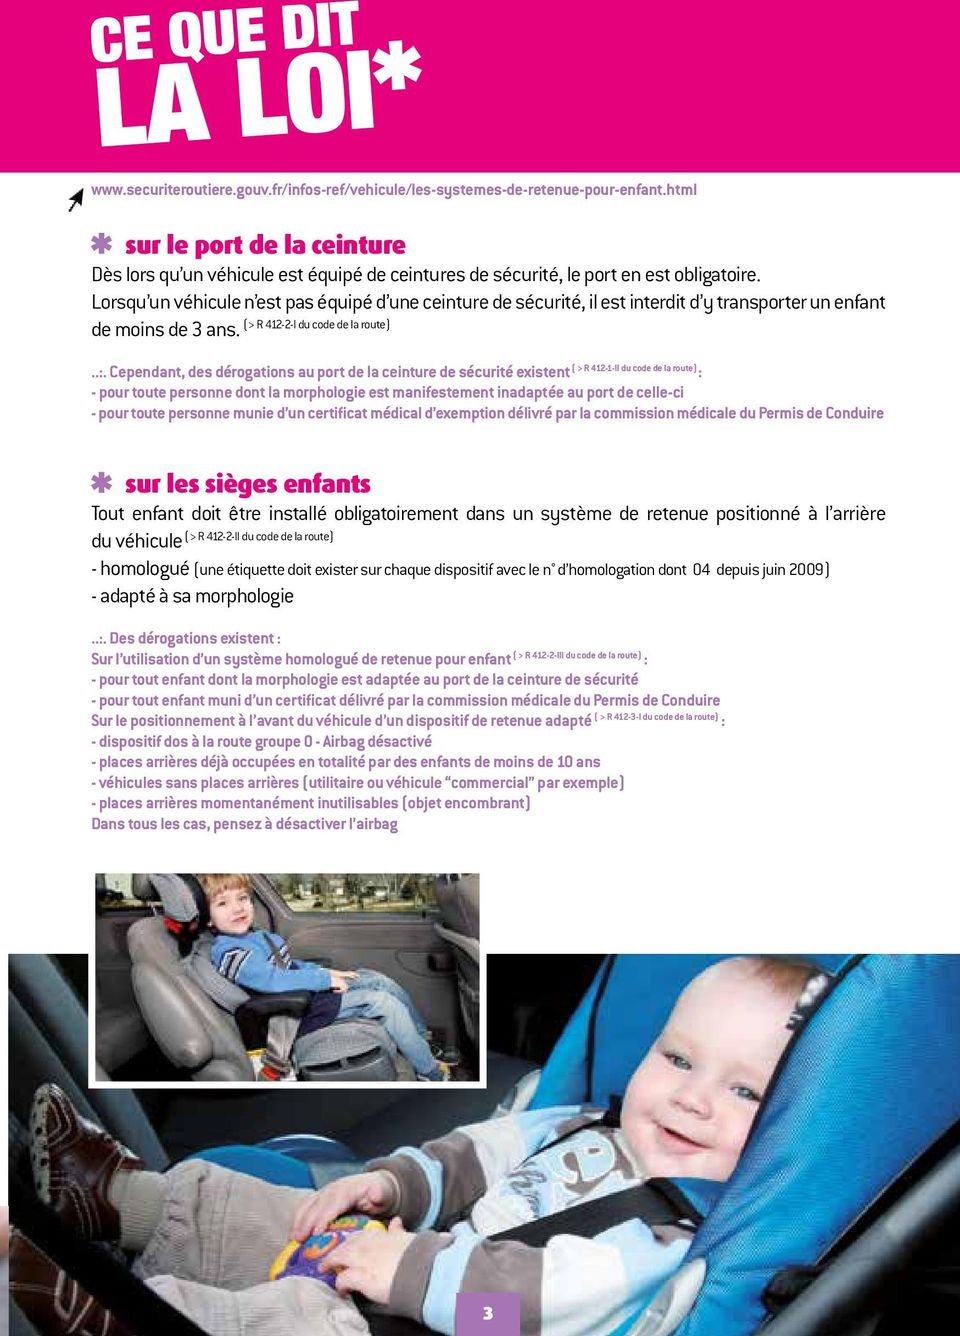 Lorsqu un véhicule n est pas équipé d une ceinture de sécurité, il est interdit d y transporter un enfant (> R 412-2-I du code de la route) de moins de 3 ans...:.